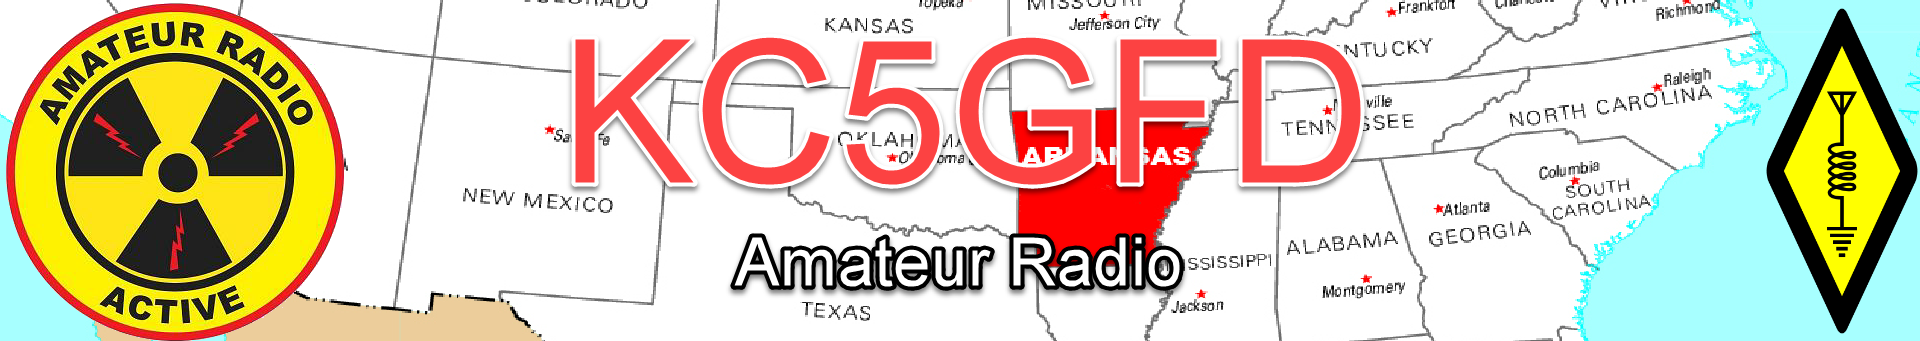 Amateur Radio - KC5GFD Cabot Arkansas